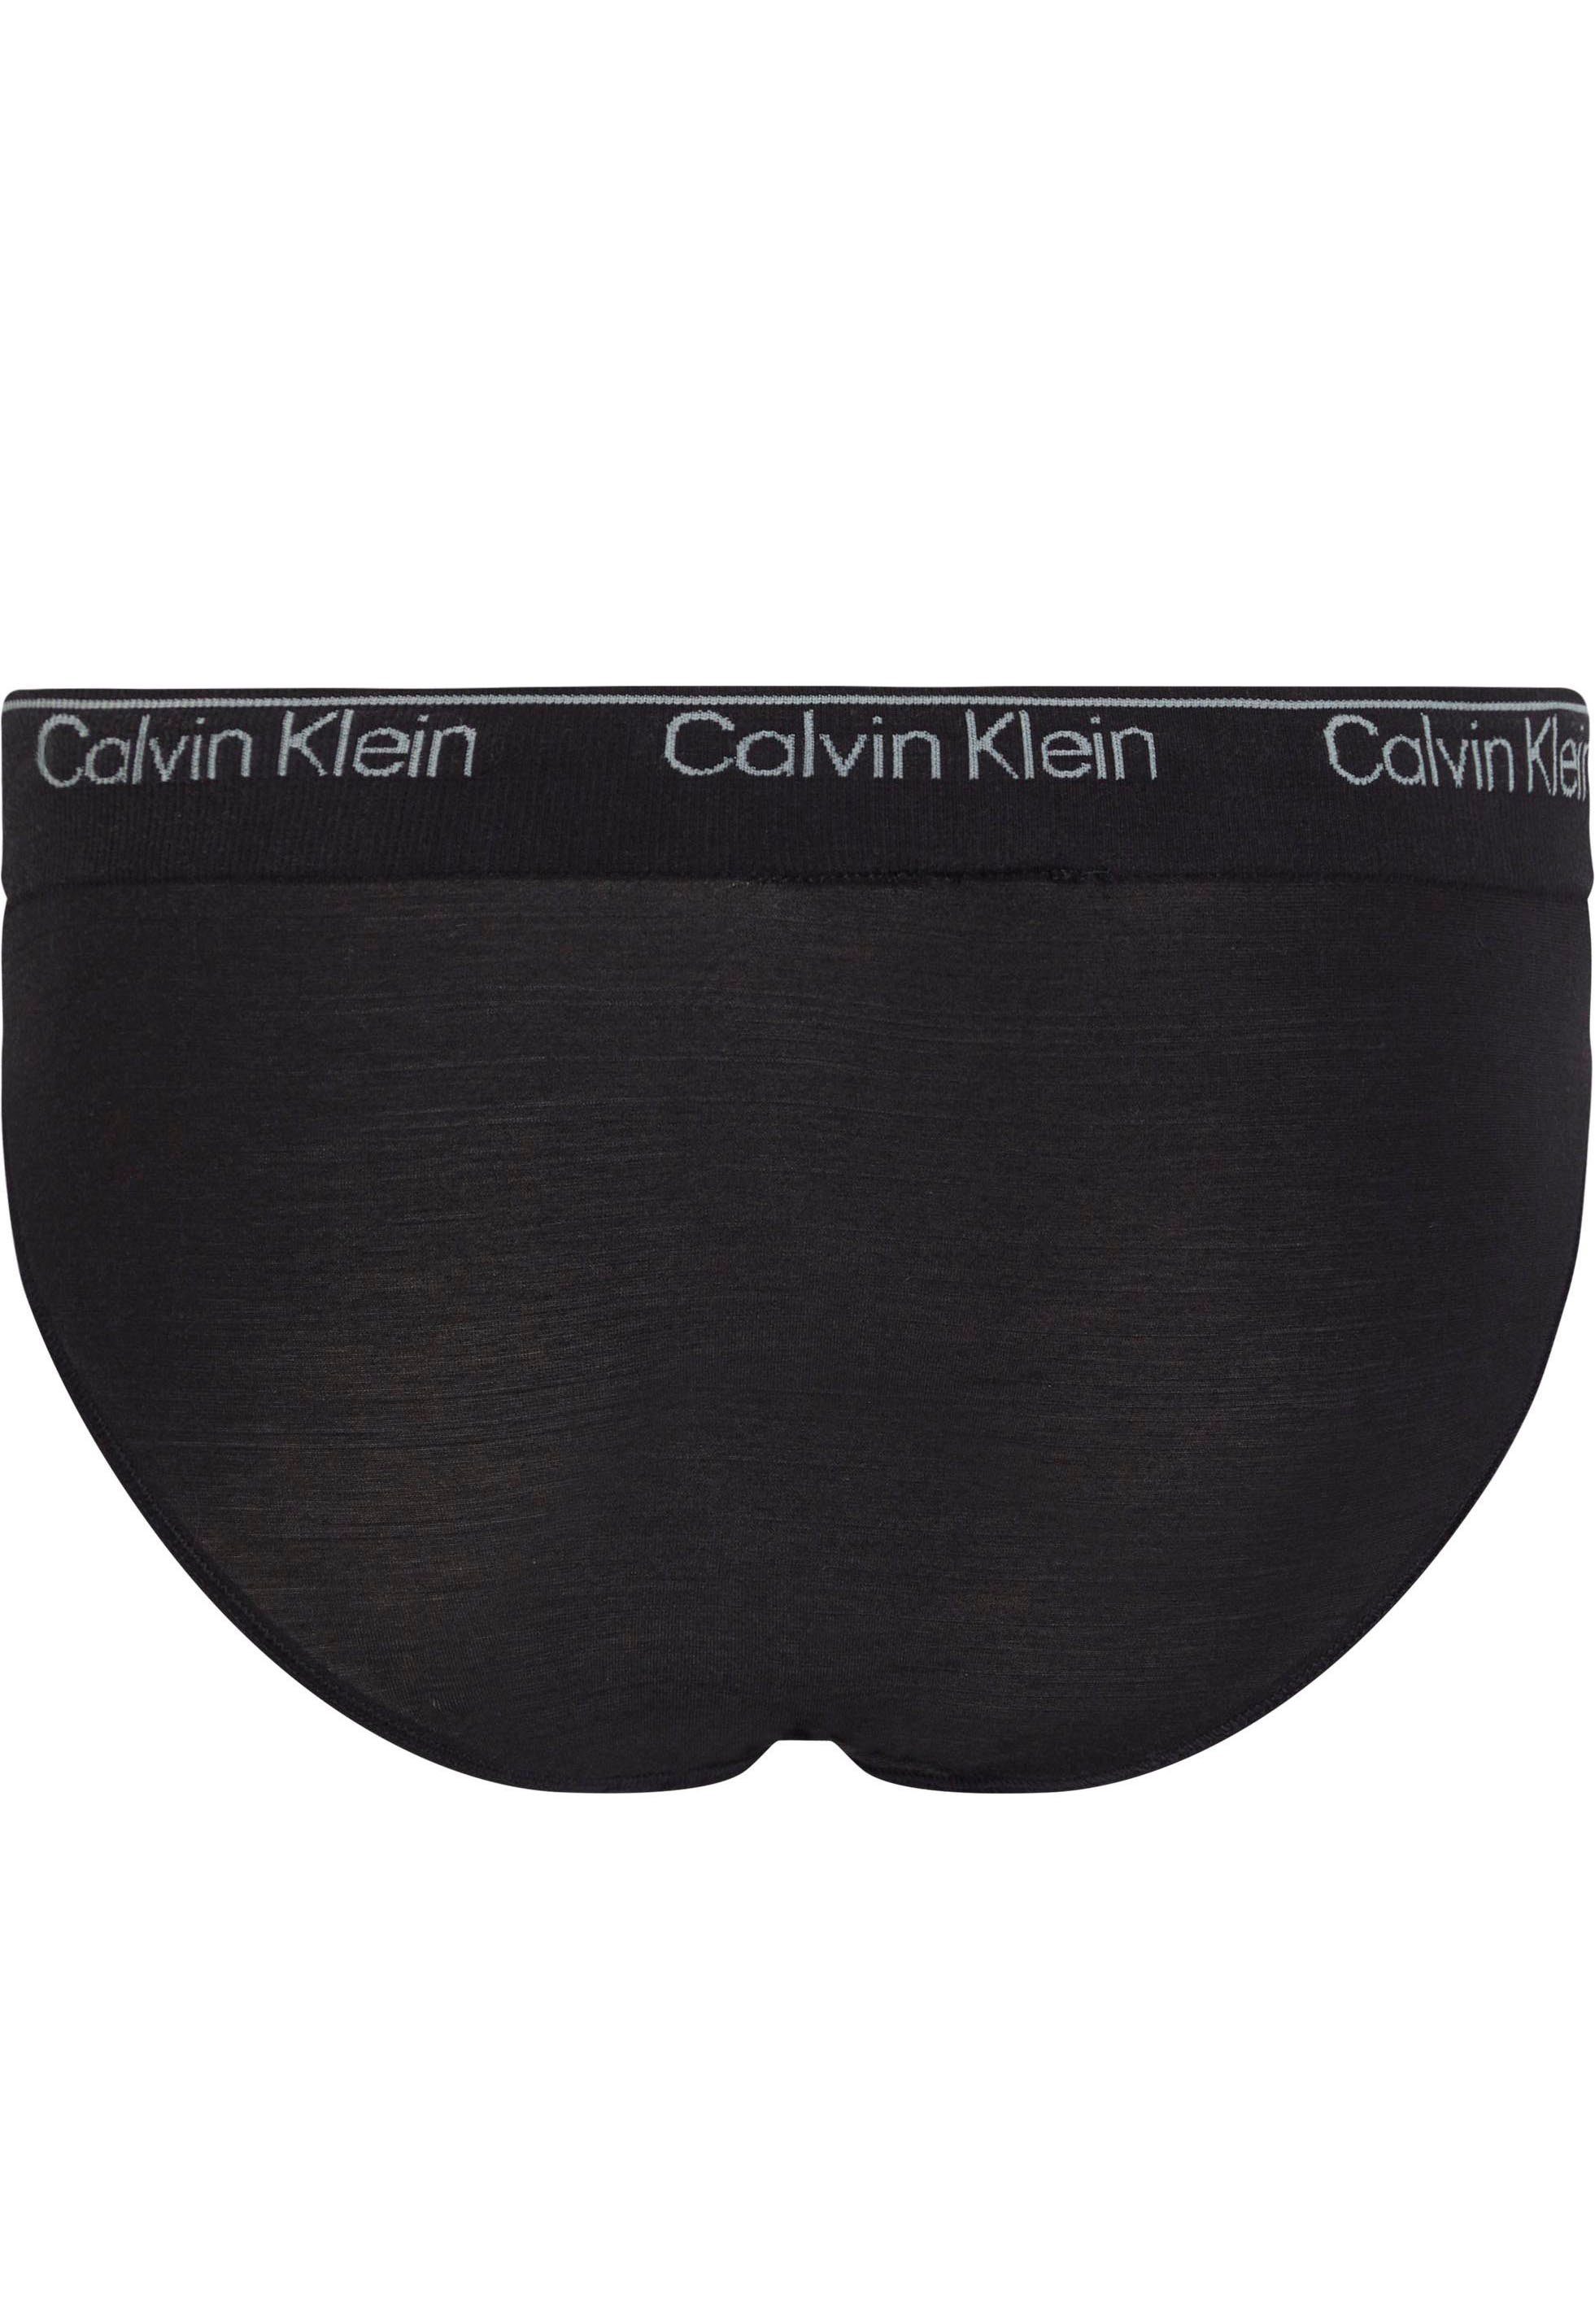 schwarz Bund am mit Underwear Bikinislip Klein BIKINI CK-Logo Calvin